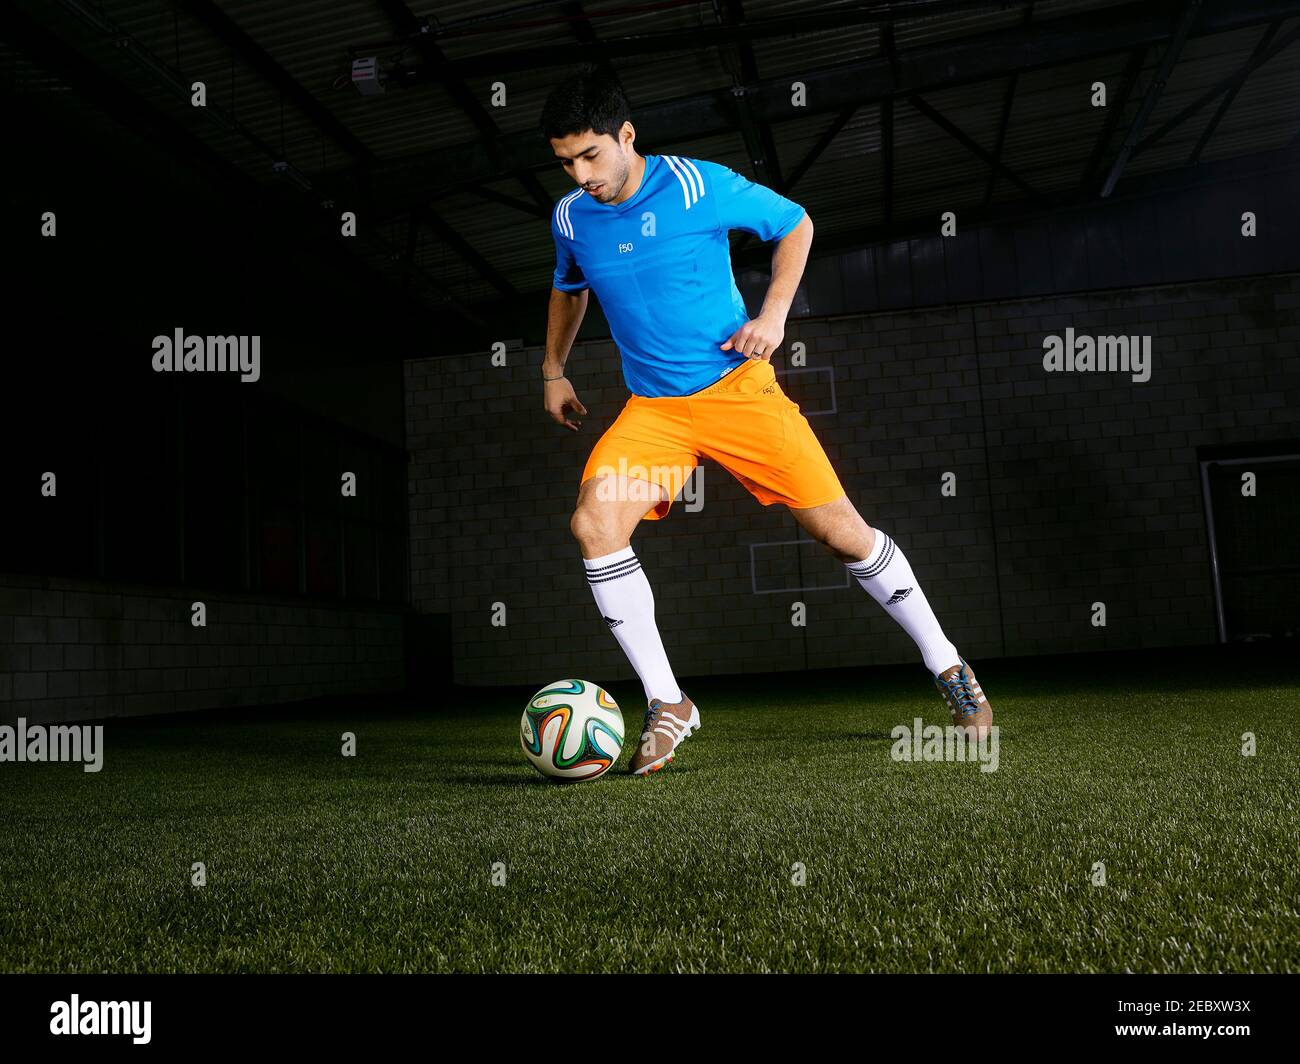 Fútbol Luis Suarez Nuevo Adidas lanzamiento de botas fútbol presentamos las primeras botas de fútbol tejidas del mundo, las botas fútbol adidas primeknit Luis Suarez lanza las nuevas